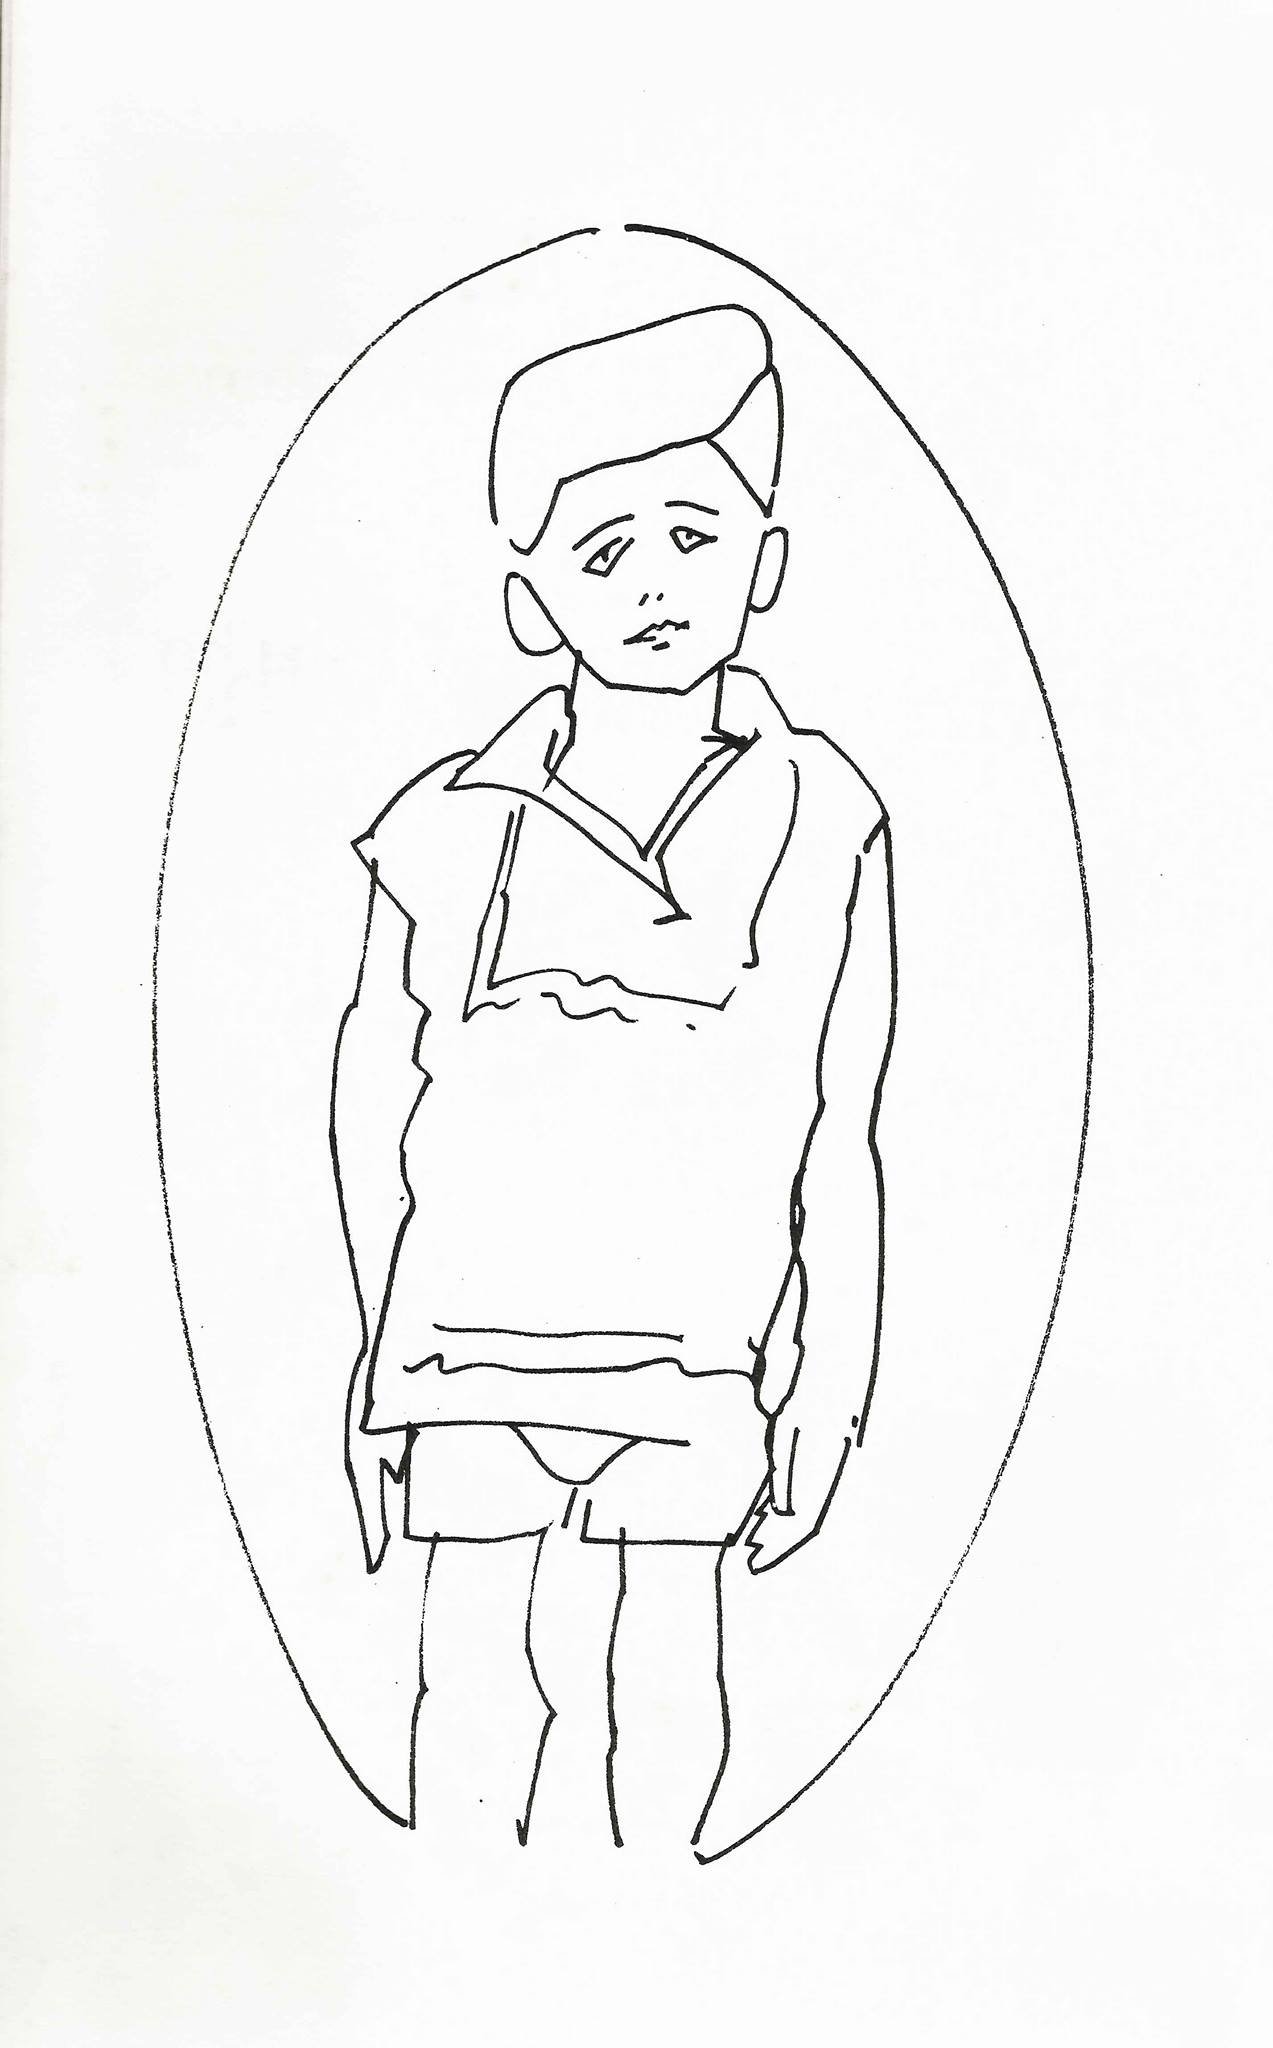 Desenho de Carlos Scliar para a primeira edição de "O menino no espelho", publicada em 1982